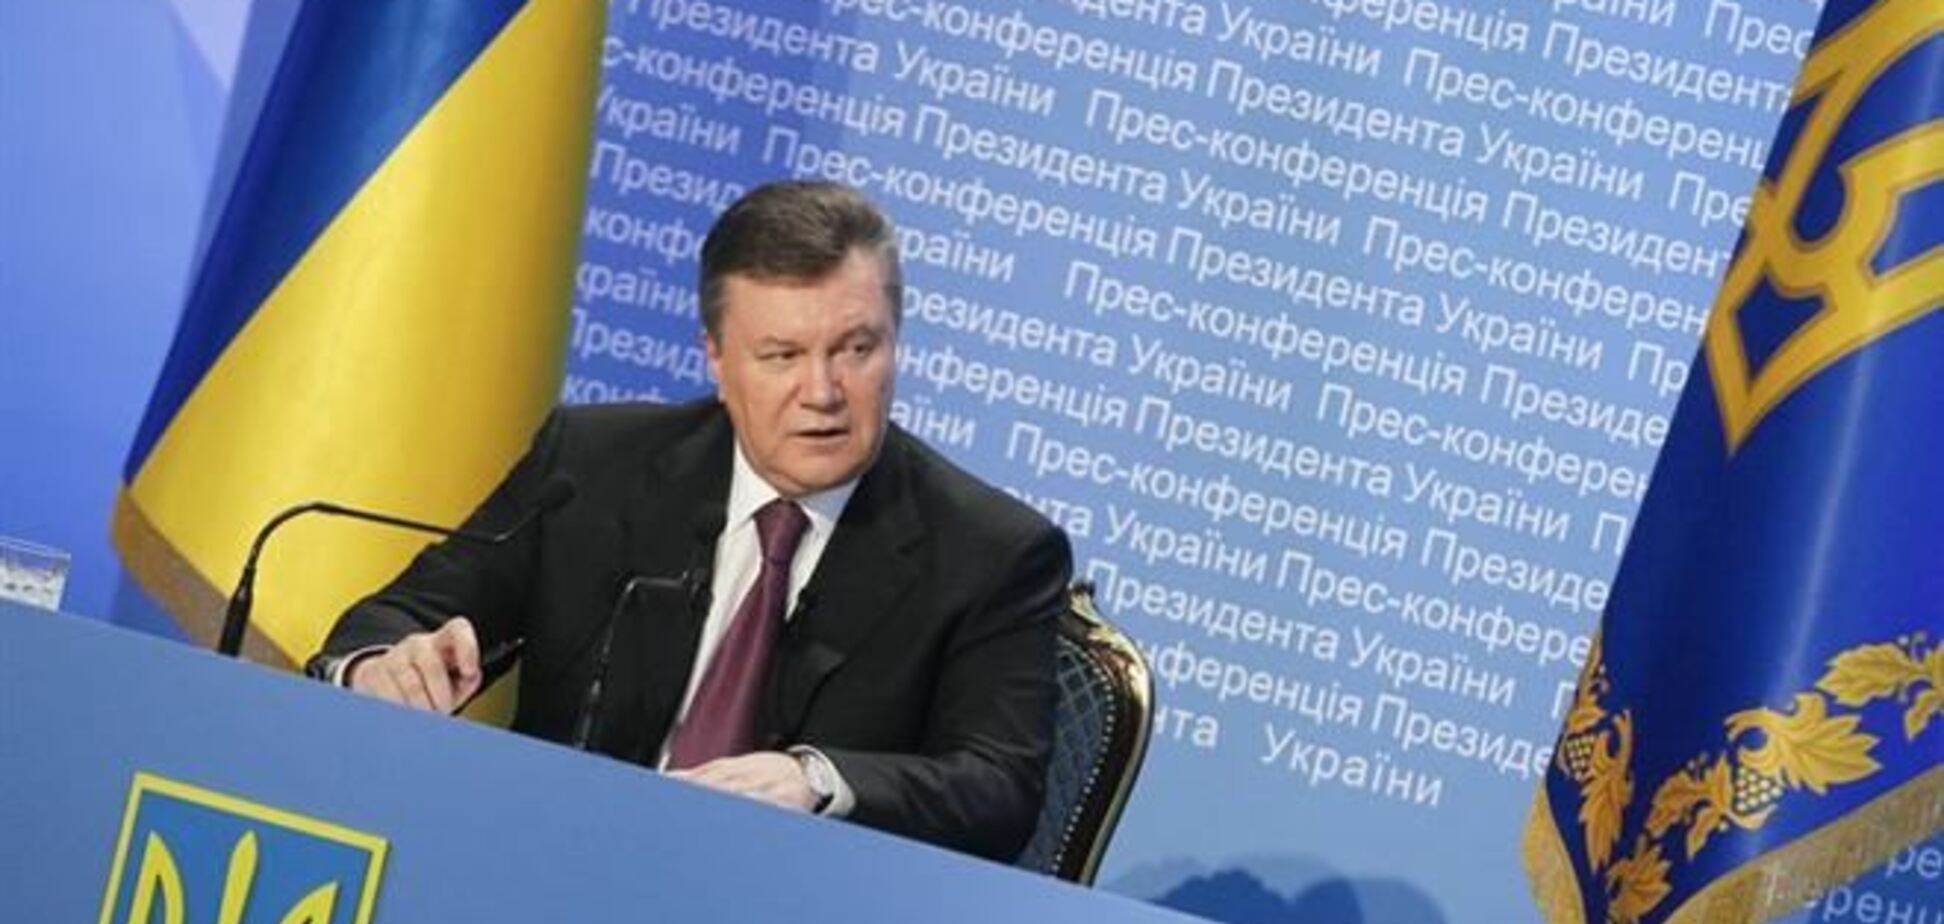  Президент розпорядився урочисто відзначити річницю входження Криму до складу України